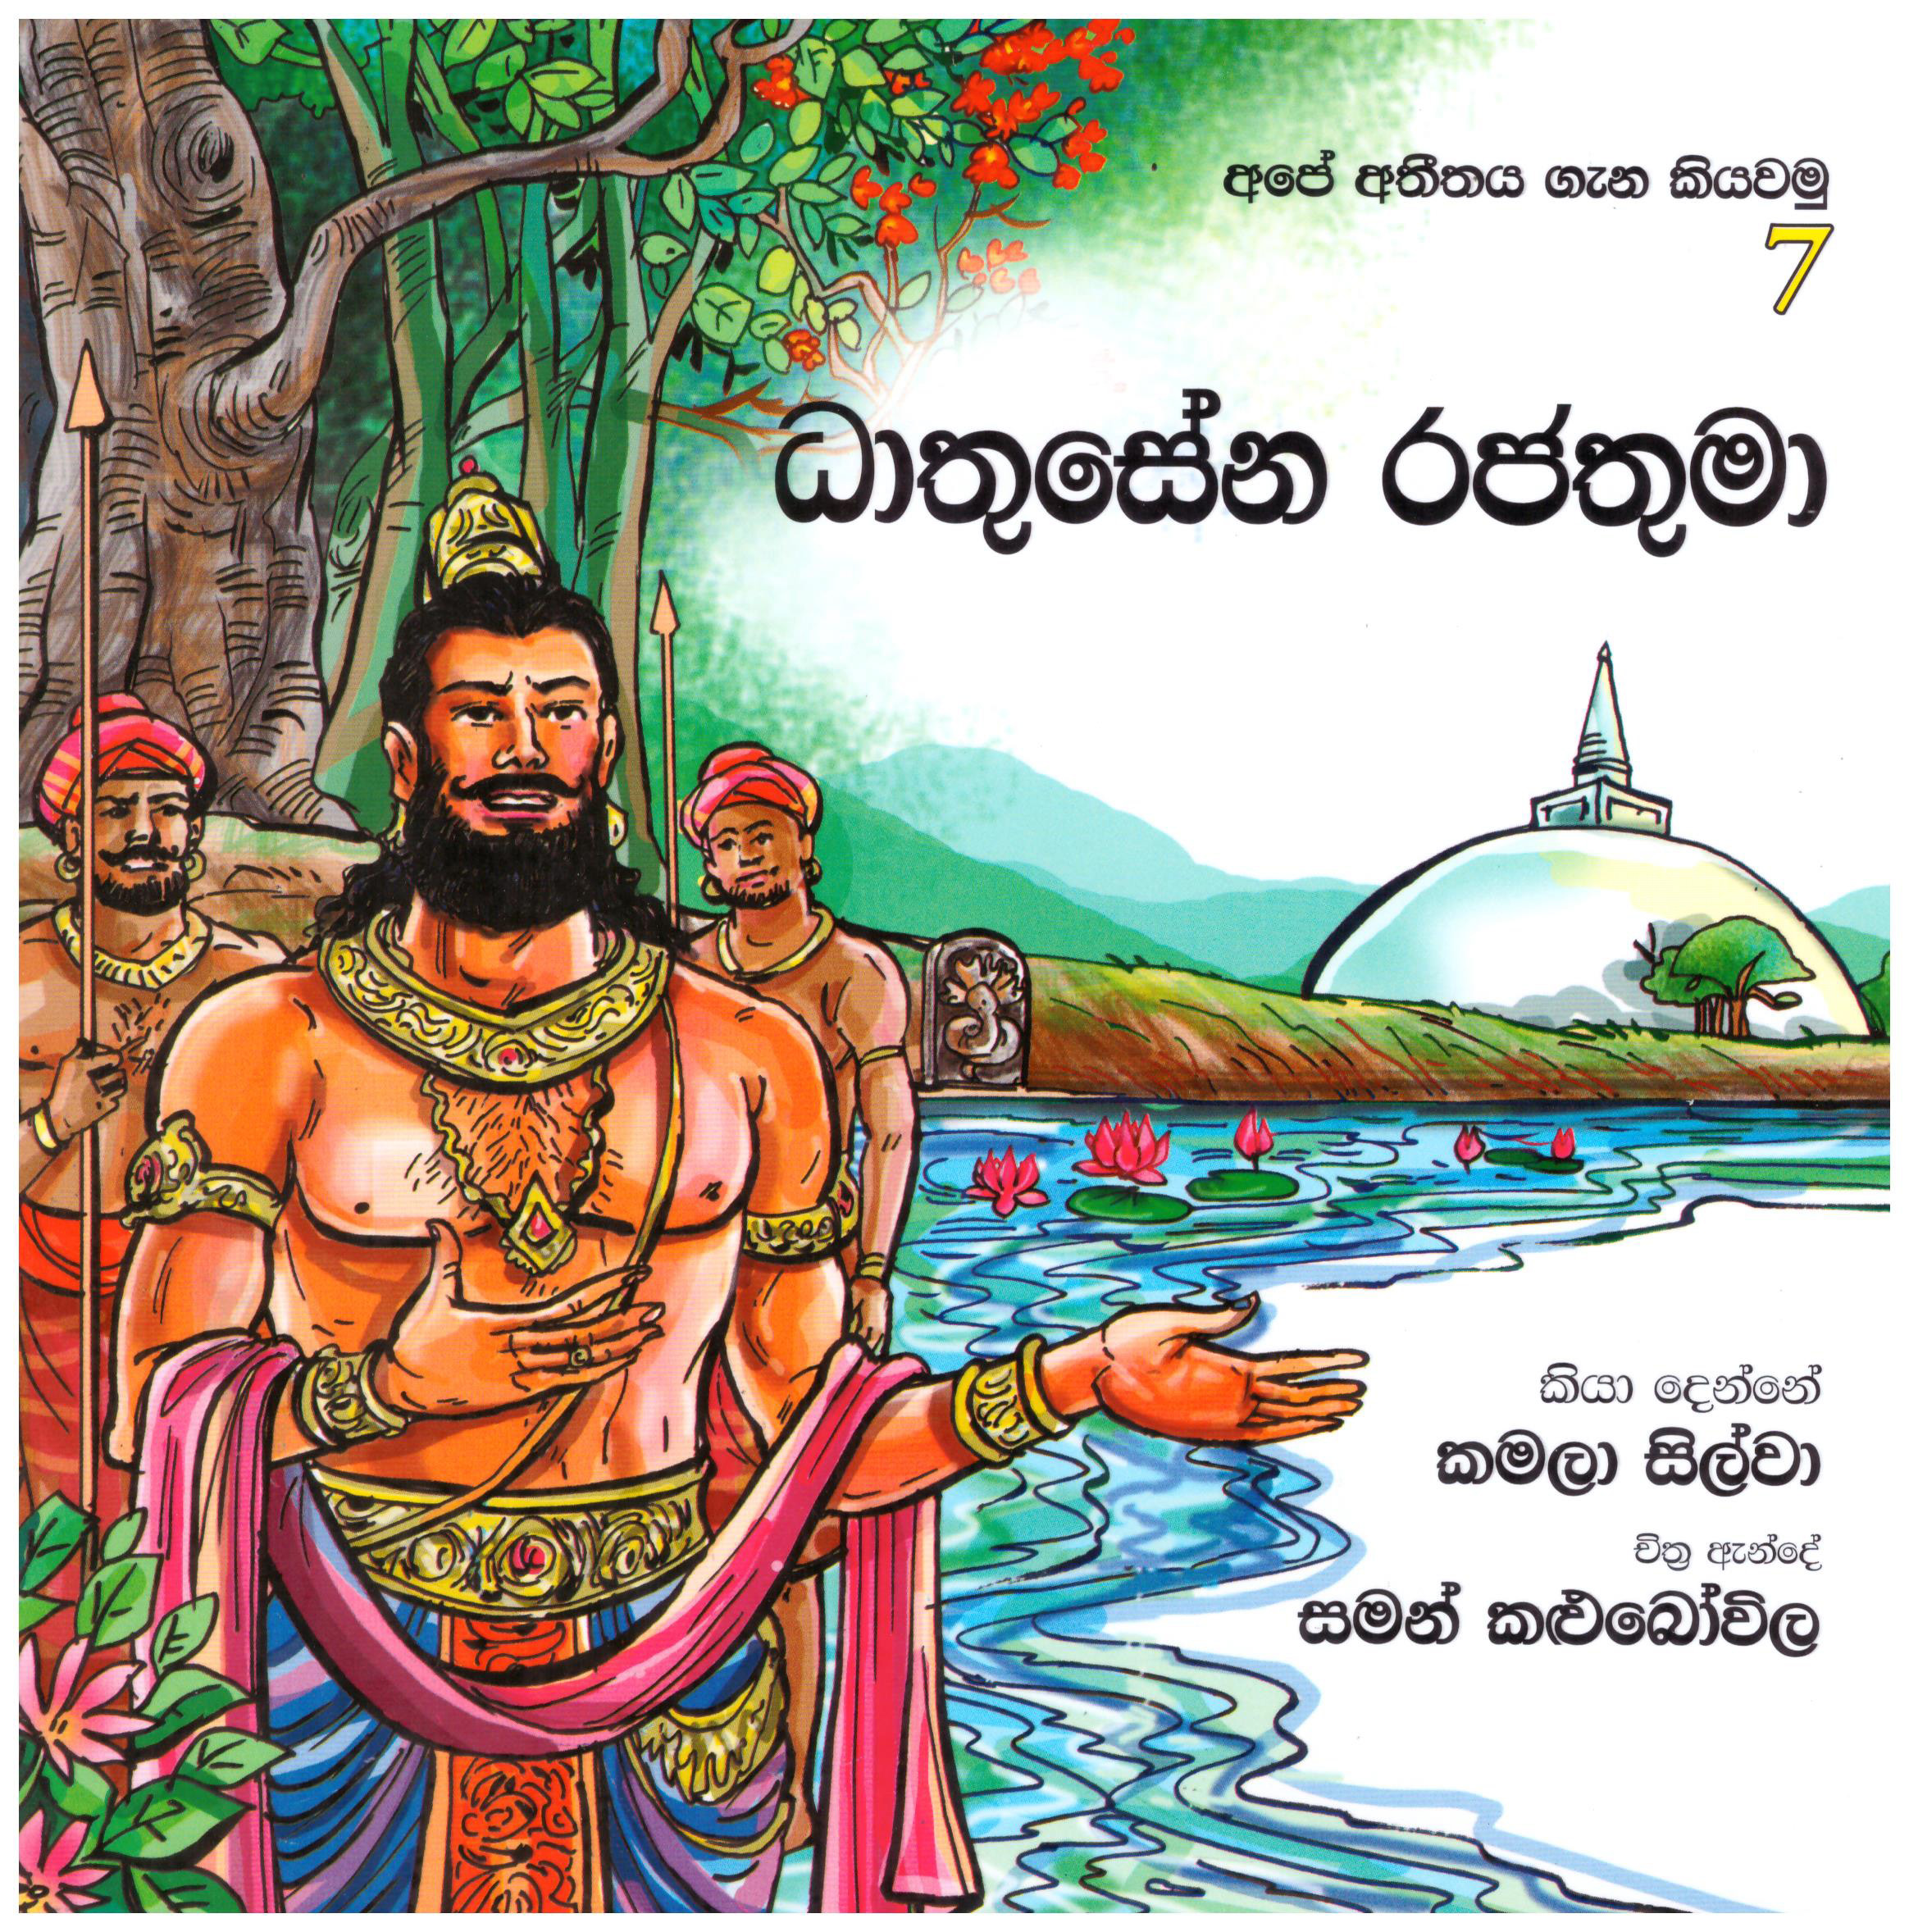 Ape Atitaya Gana Kiyawamu 7 - Dhathusena Rajathuma